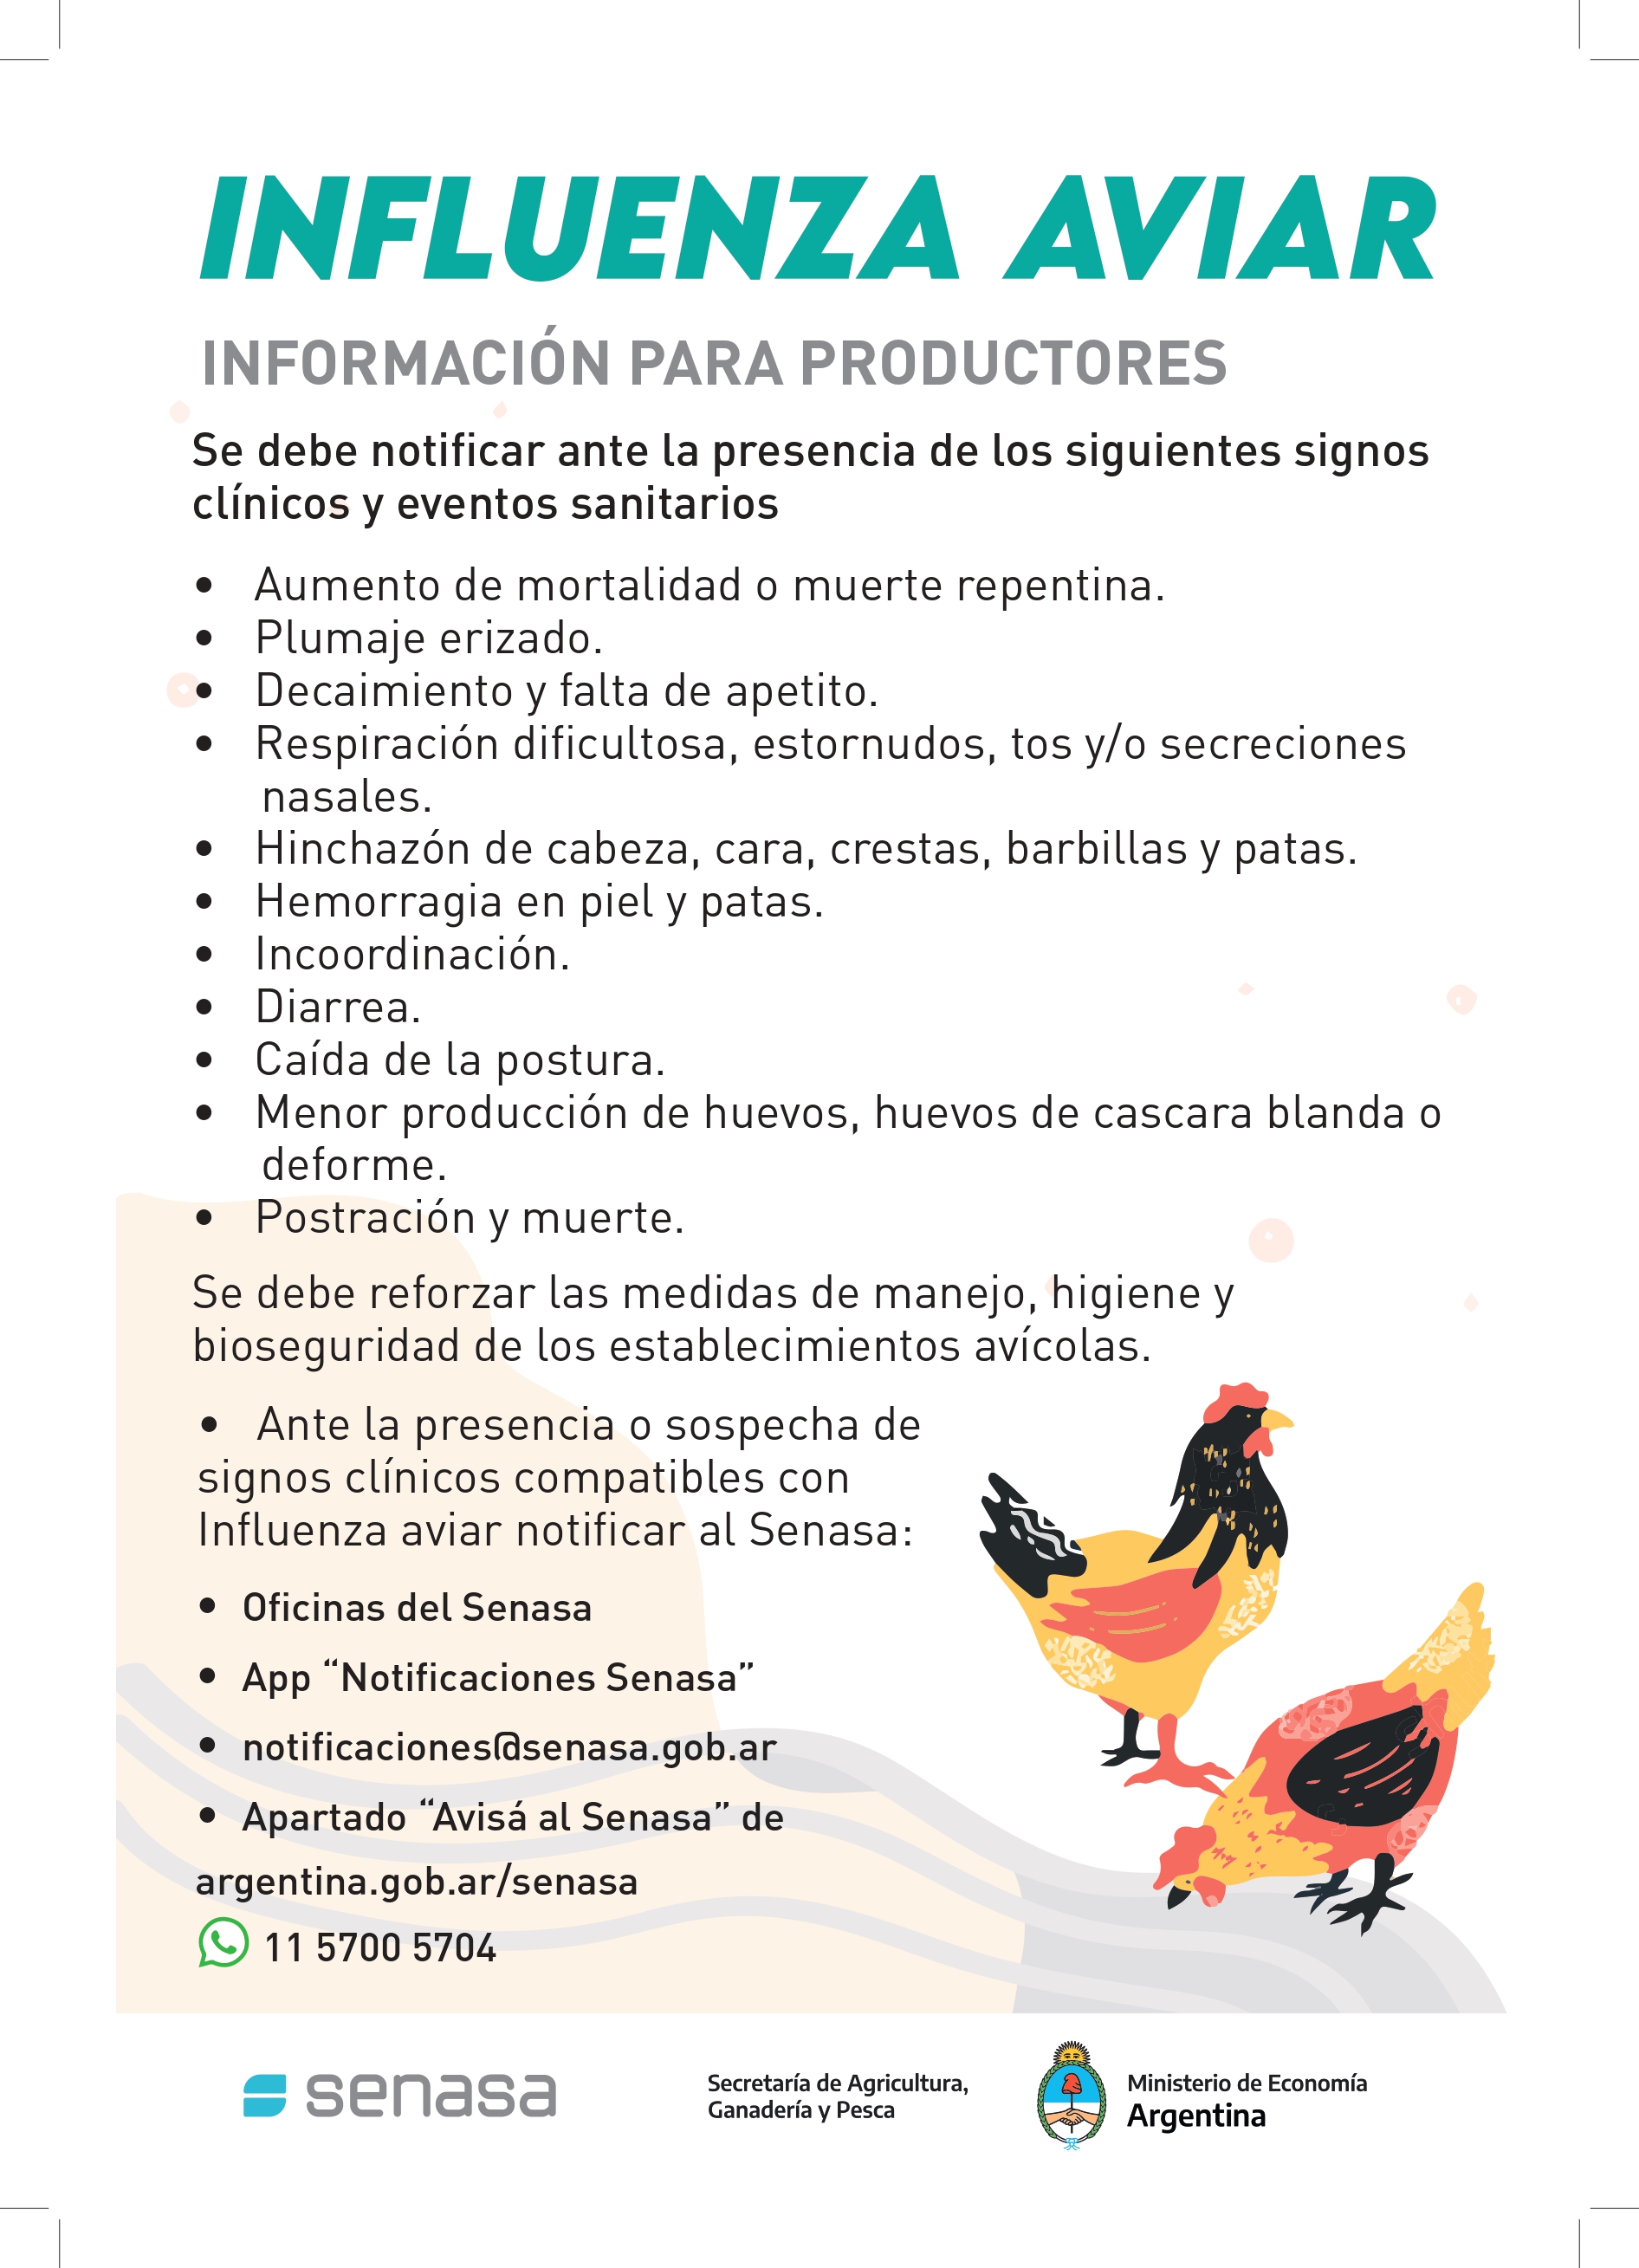 https://www.apsanet.com.ar/novedades/3/influenza-aviar-